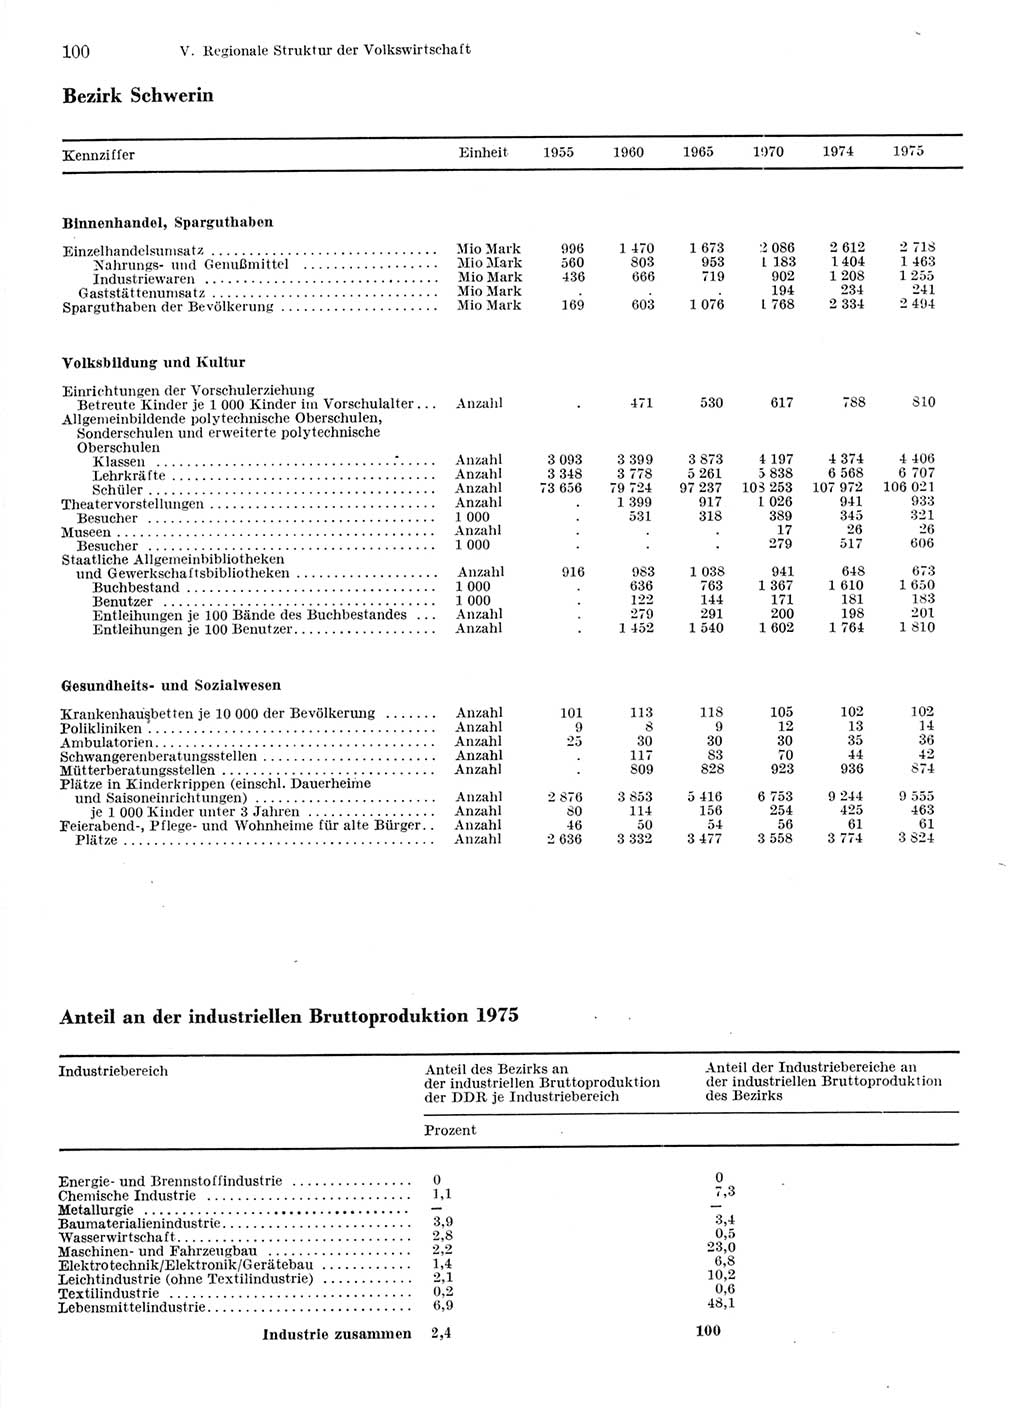 Statistisches Jahrbuch der Deutschen Demokratischen Republik (DDR) 1976, Seite 100 (Stat. Jb. DDR 1976, S. 100)